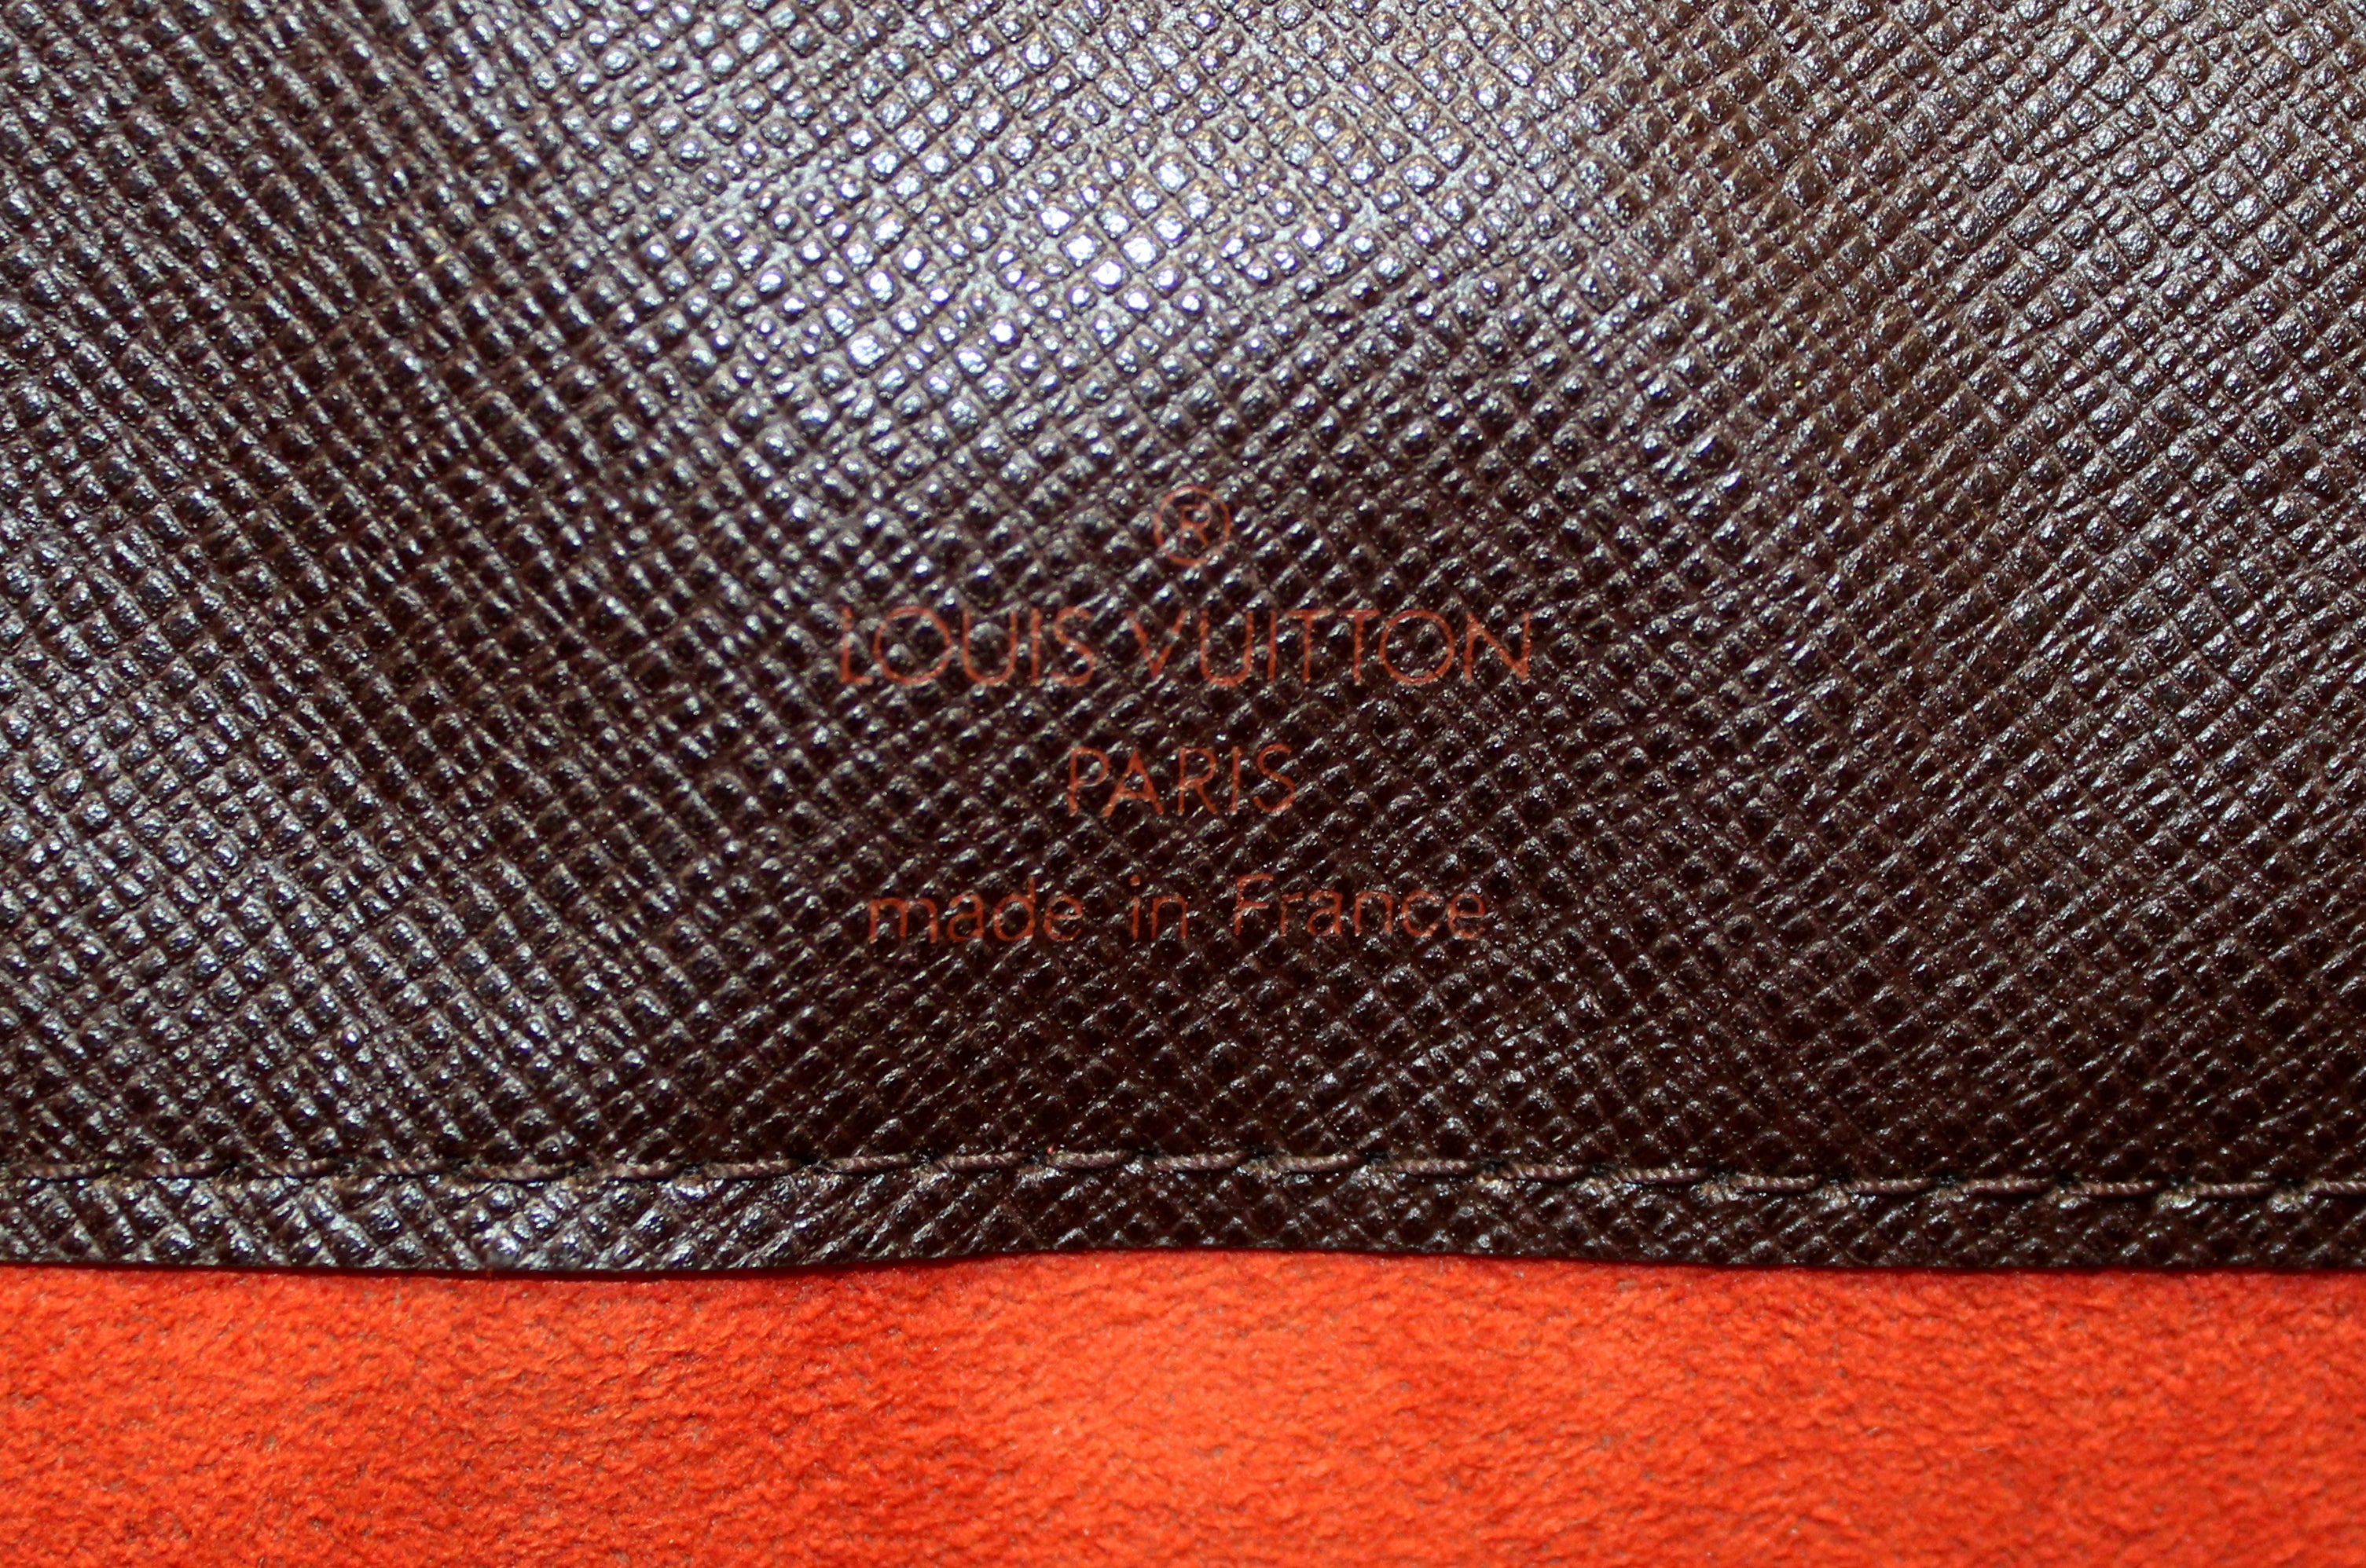 Authentic Louis Vuitton Damier Ebene Pimlico Messenger Bag